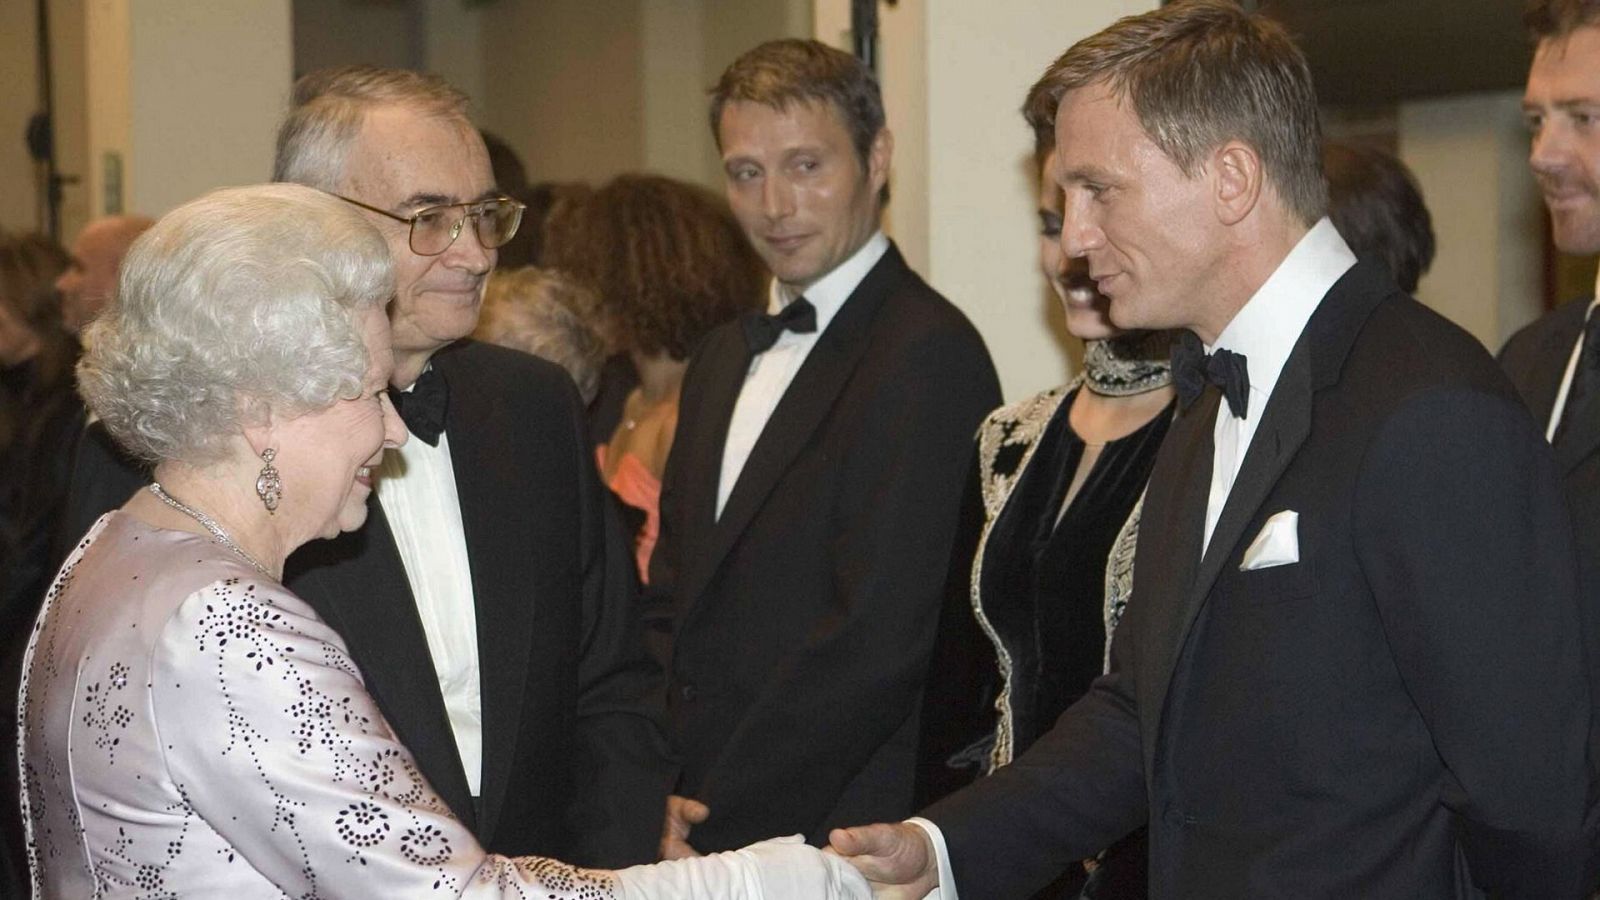 La reina Isabel II saluda a Daniel Craig en la premiere de 'Casino Royal'